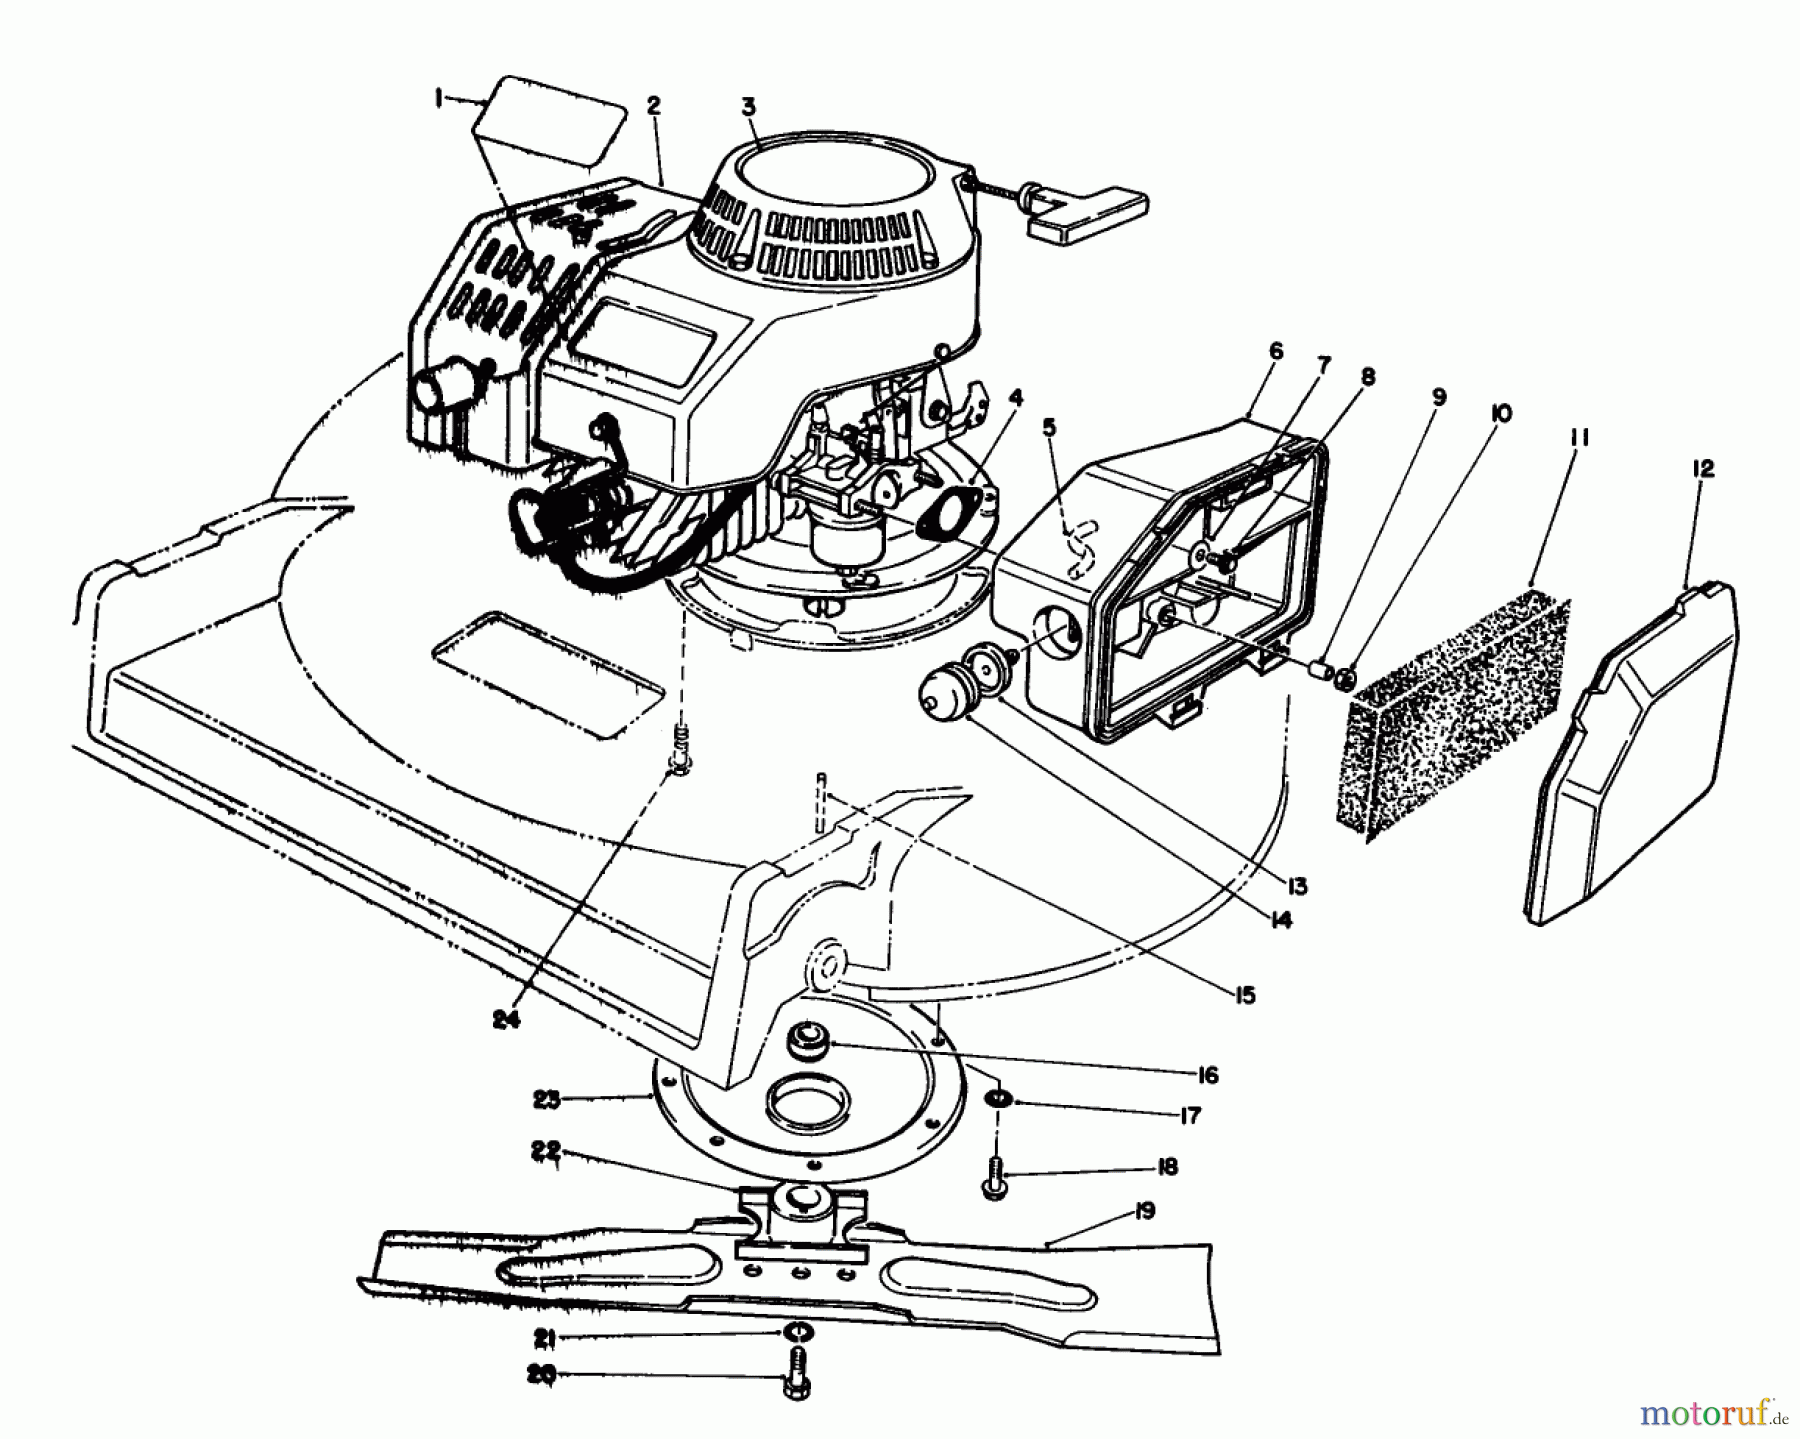  Toro Neu Mowers, Walk-Behind Seite 2 22030 - Toro Lawnmower, 1991 (1000001-1999999) ENGINE ASSEMBLY (MODEL 22030)